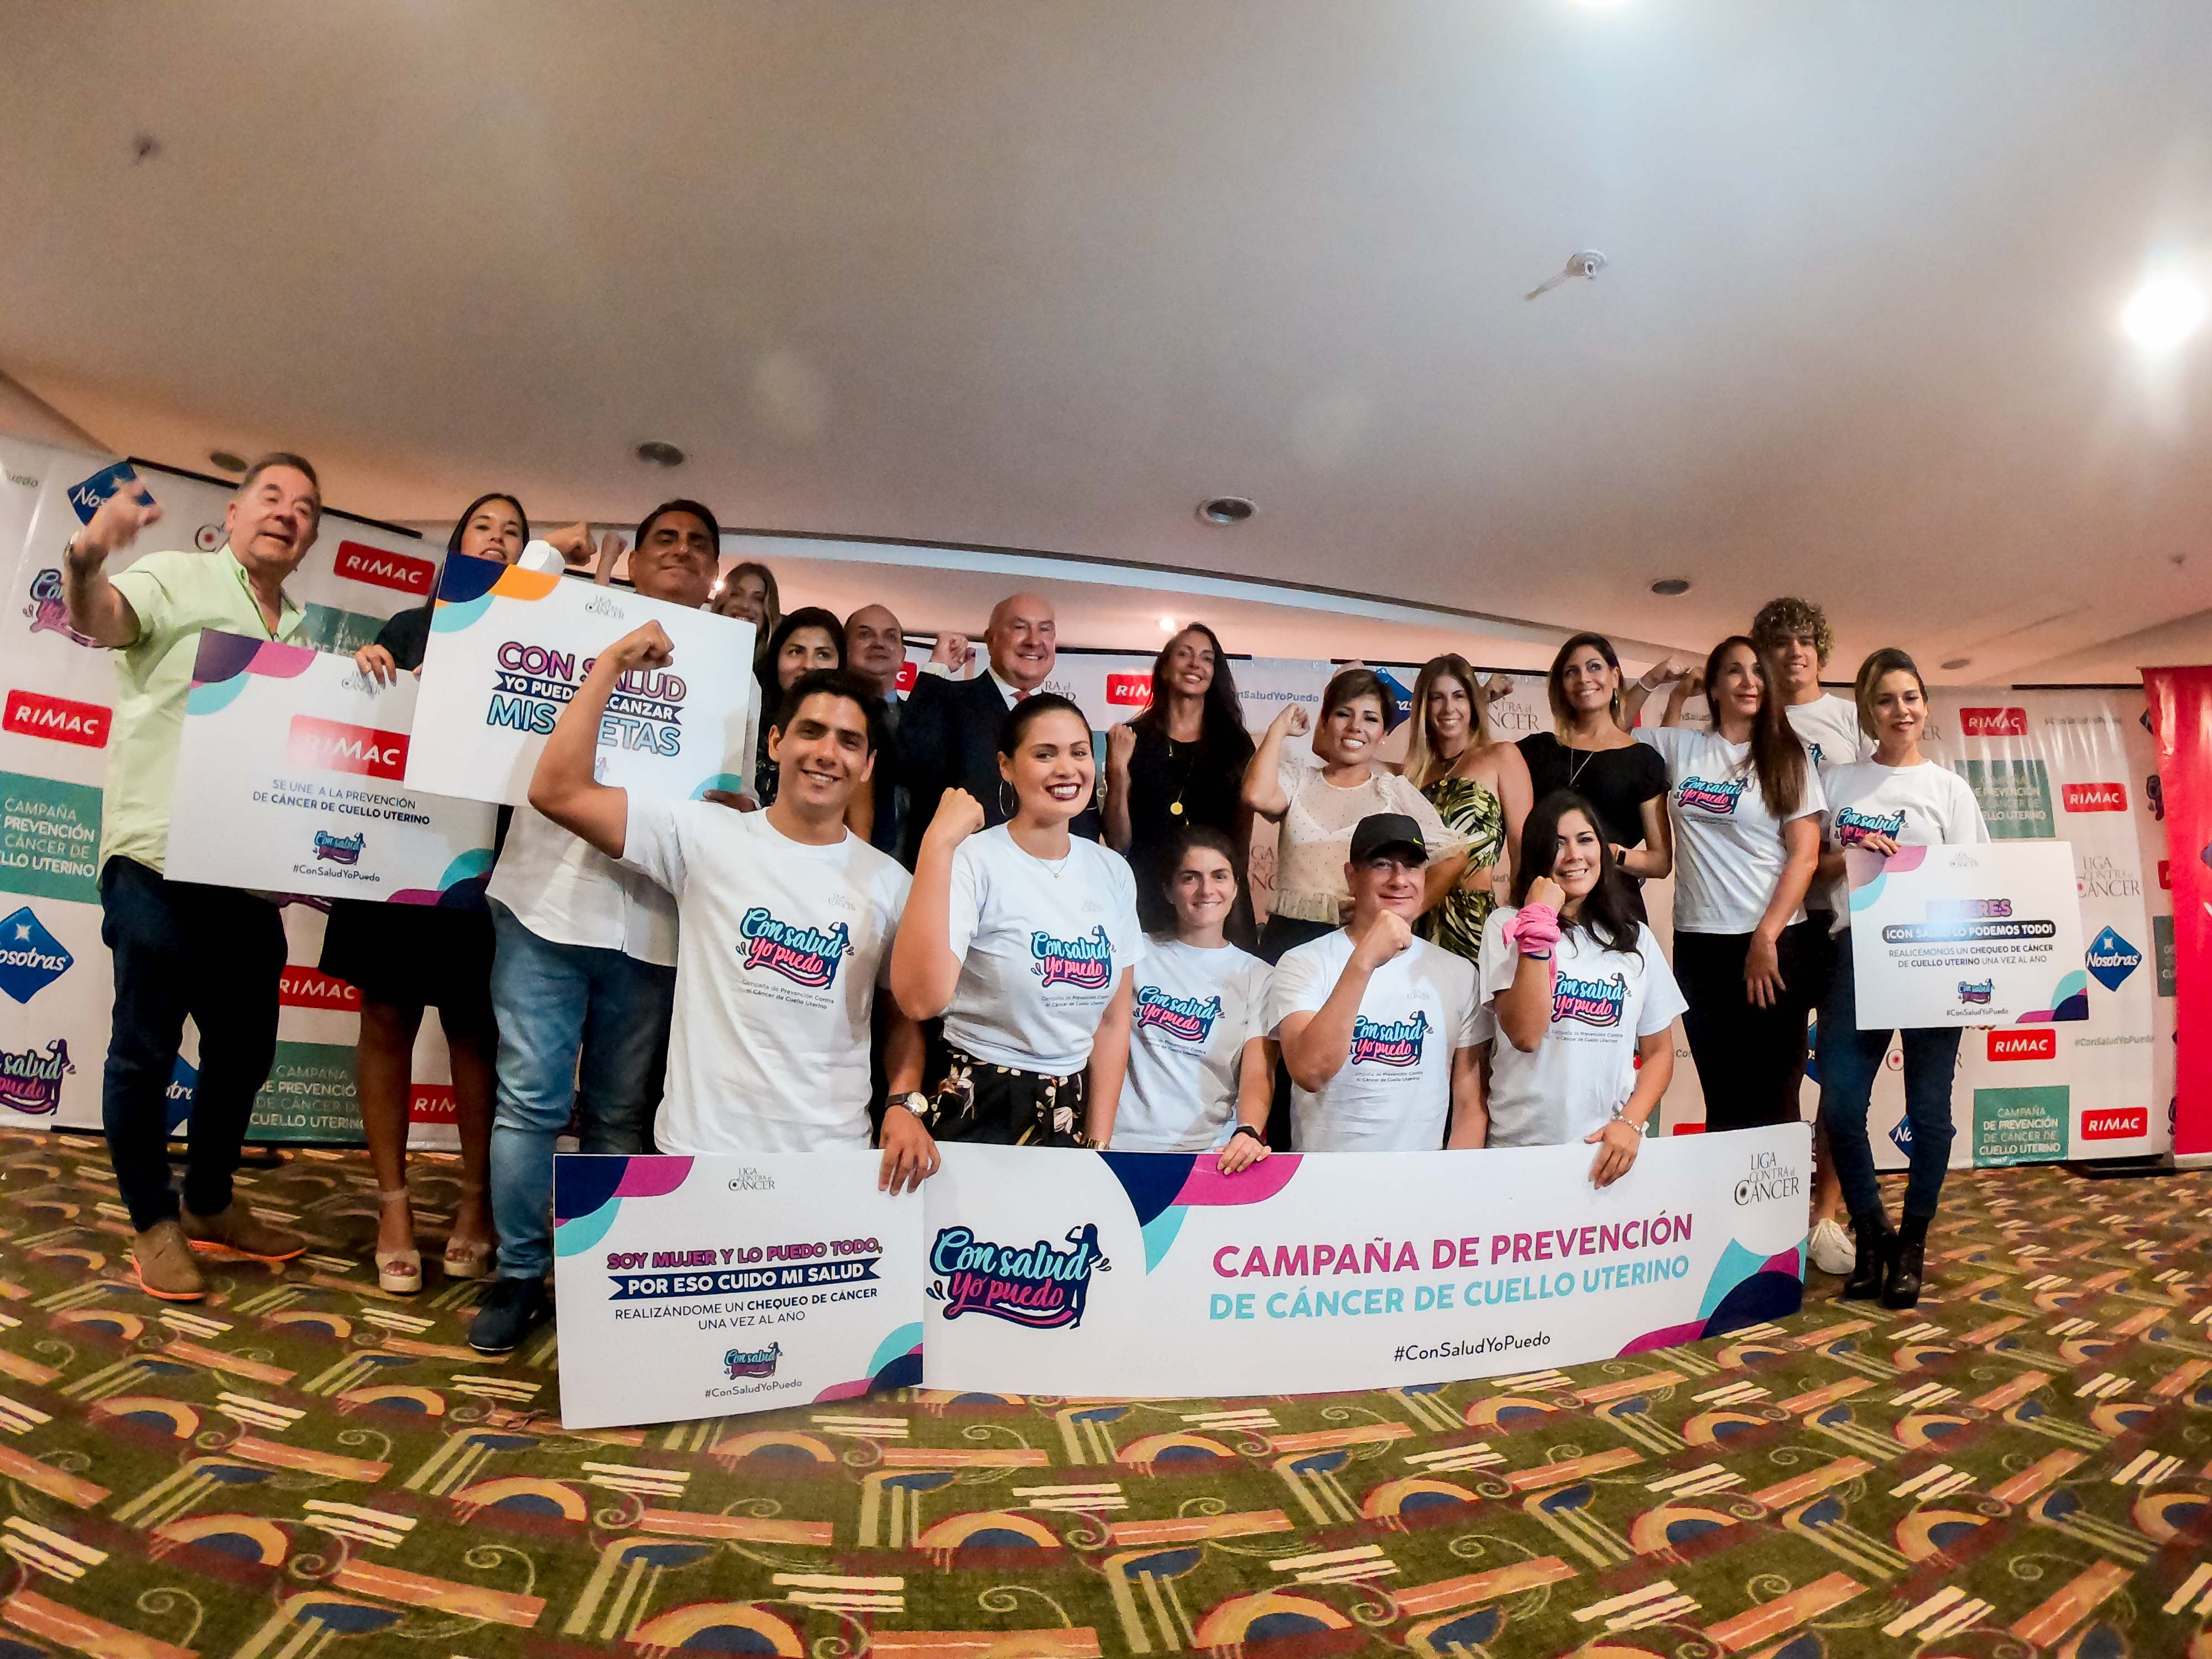 Peruanas con historias de éxito son imagen de campaña de empoderamiento femenino “Con Salud Yo Puedo”